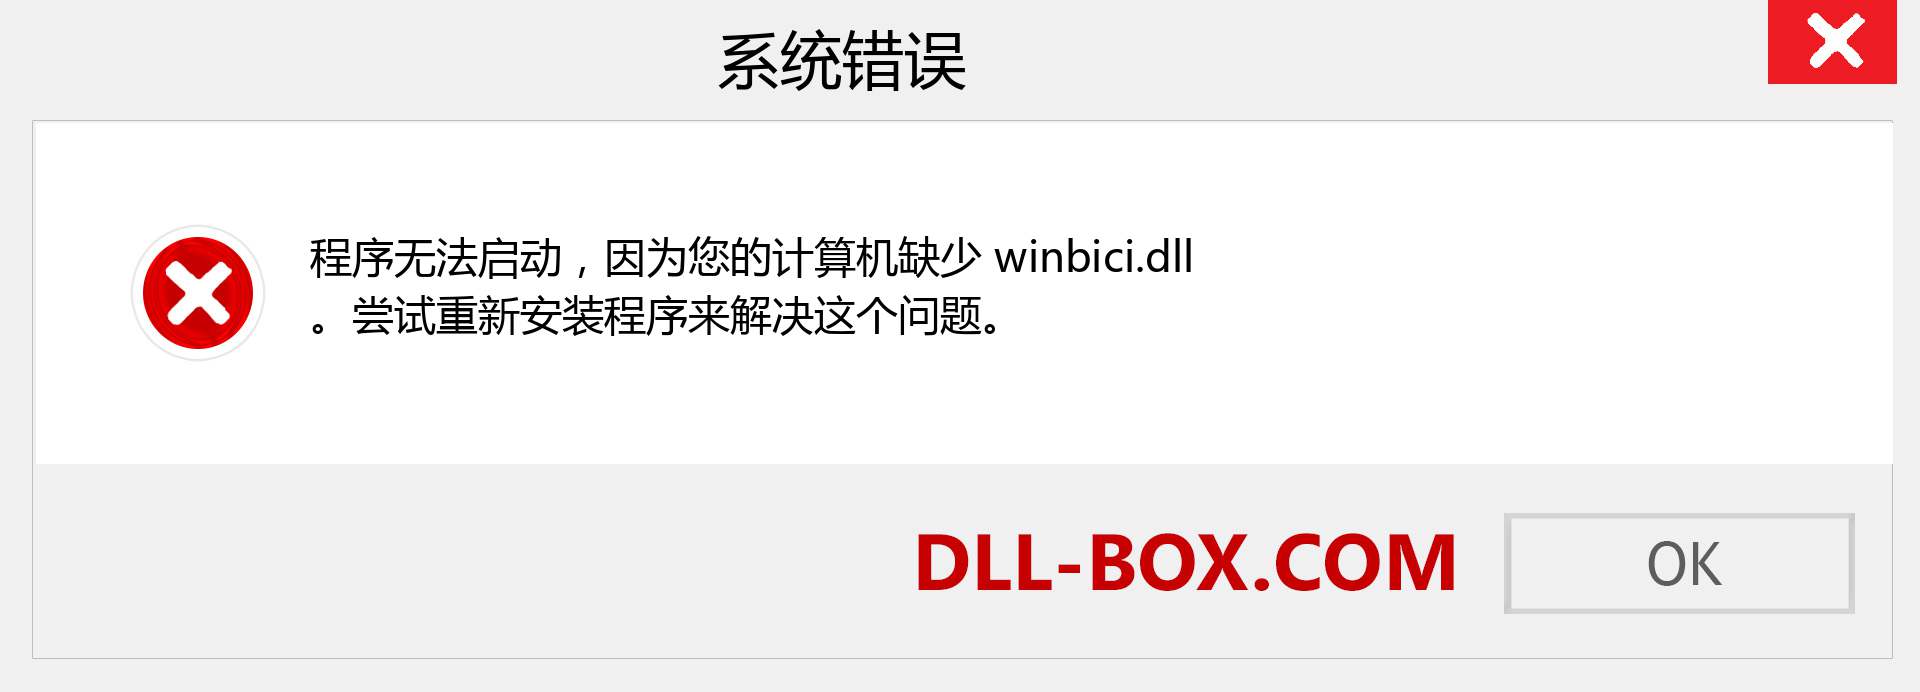 winbici.dll 文件丢失？。 适用于 Windows 7、8、10 的下载 - 修复 Windows、照片、图像上的 winbici dll 丢失错误